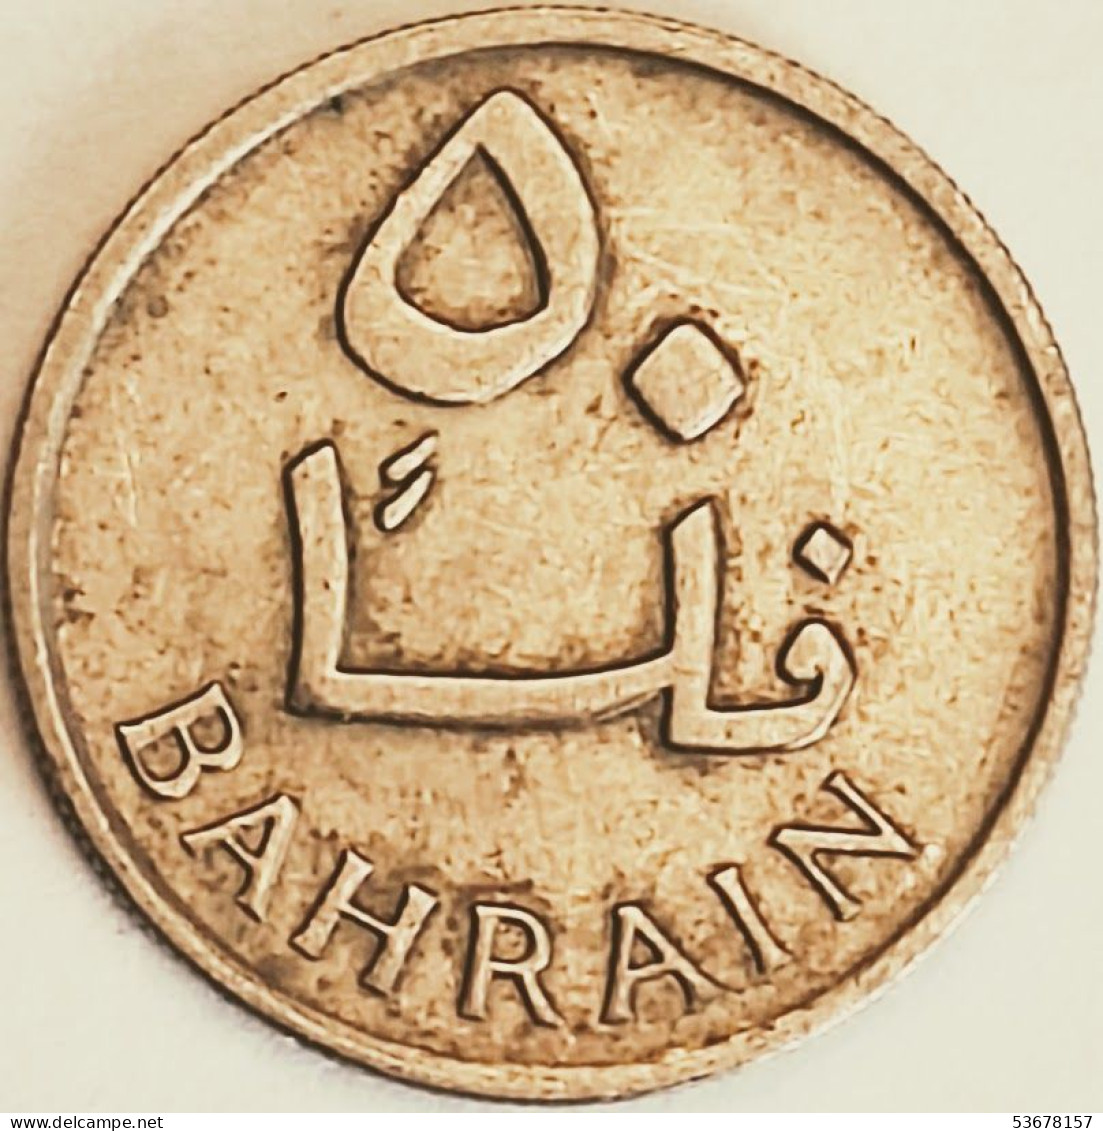 Bahrain - 50 Fils AH1385-1965, KM# 5 (#3062) - Bahrain